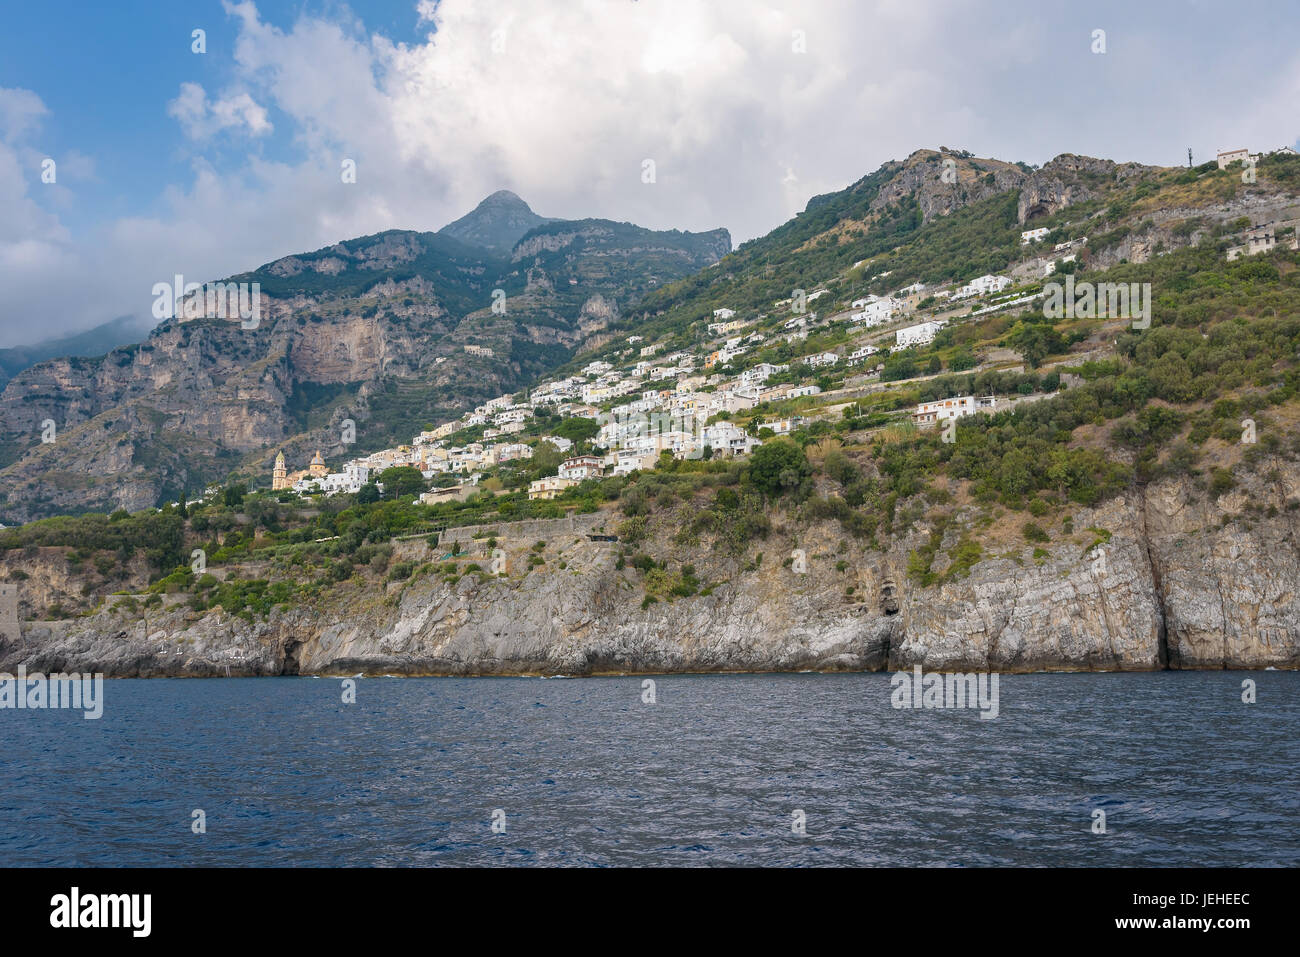 Amalfi coast near Positano seen from the sea, Campania, Italy Stock Photo